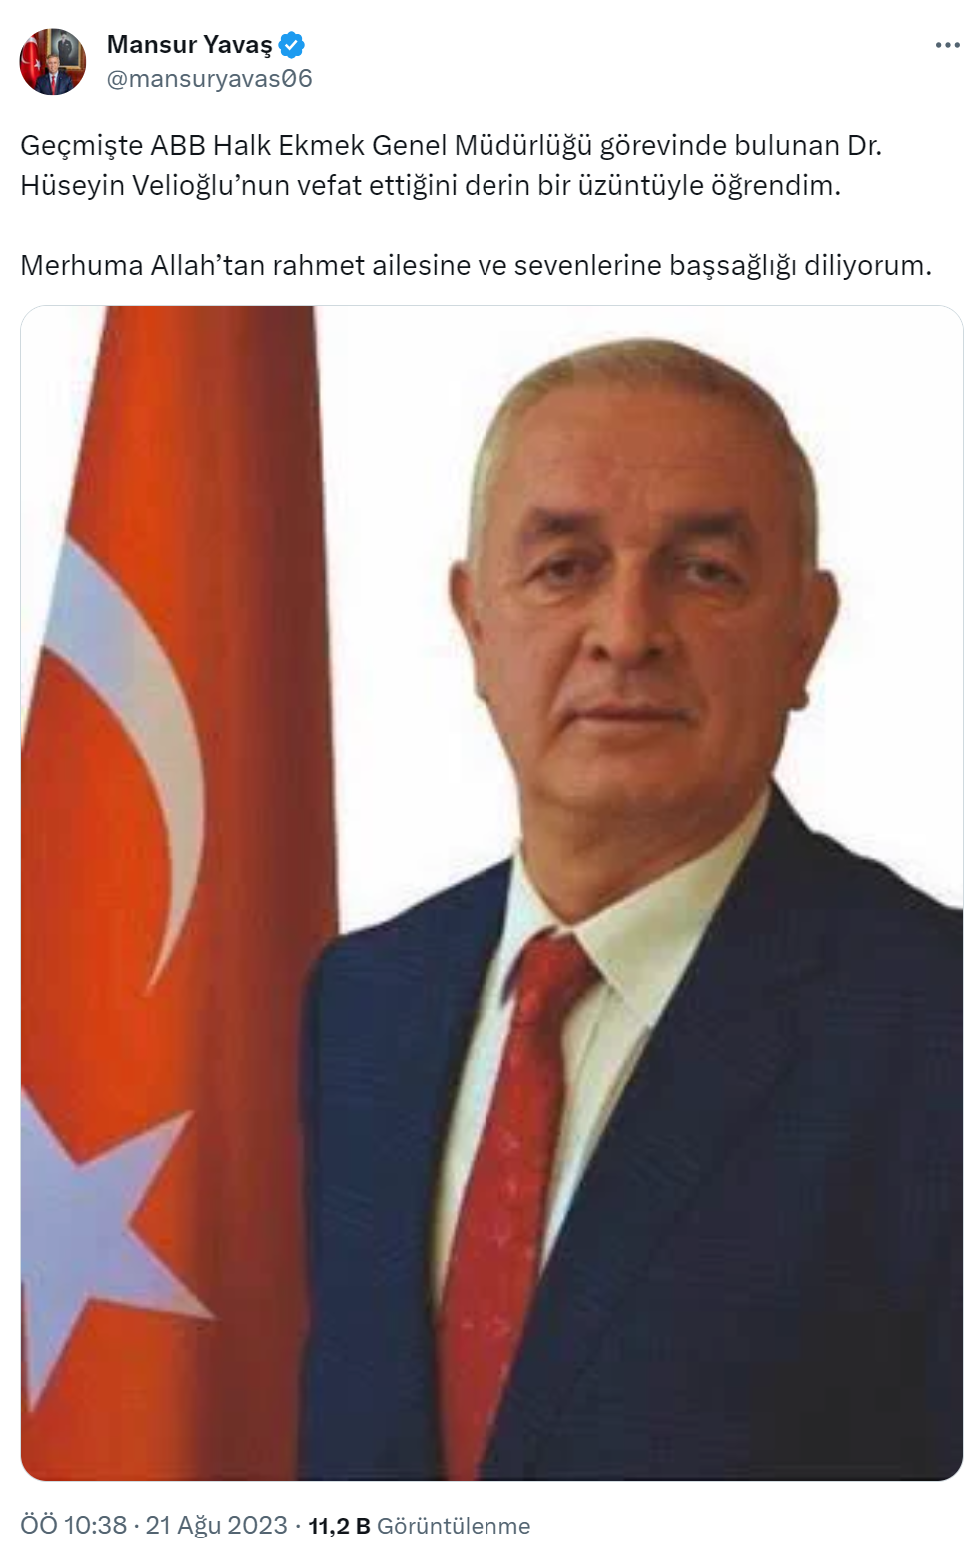 Ankara Büyükşehir Belediye Başkanı Mansur Yavaş, eski ABB Halk Ekmek Genel Müdürü Dr. Hüseyin Velioğlu için başsağlığı mesajı yayımladı.